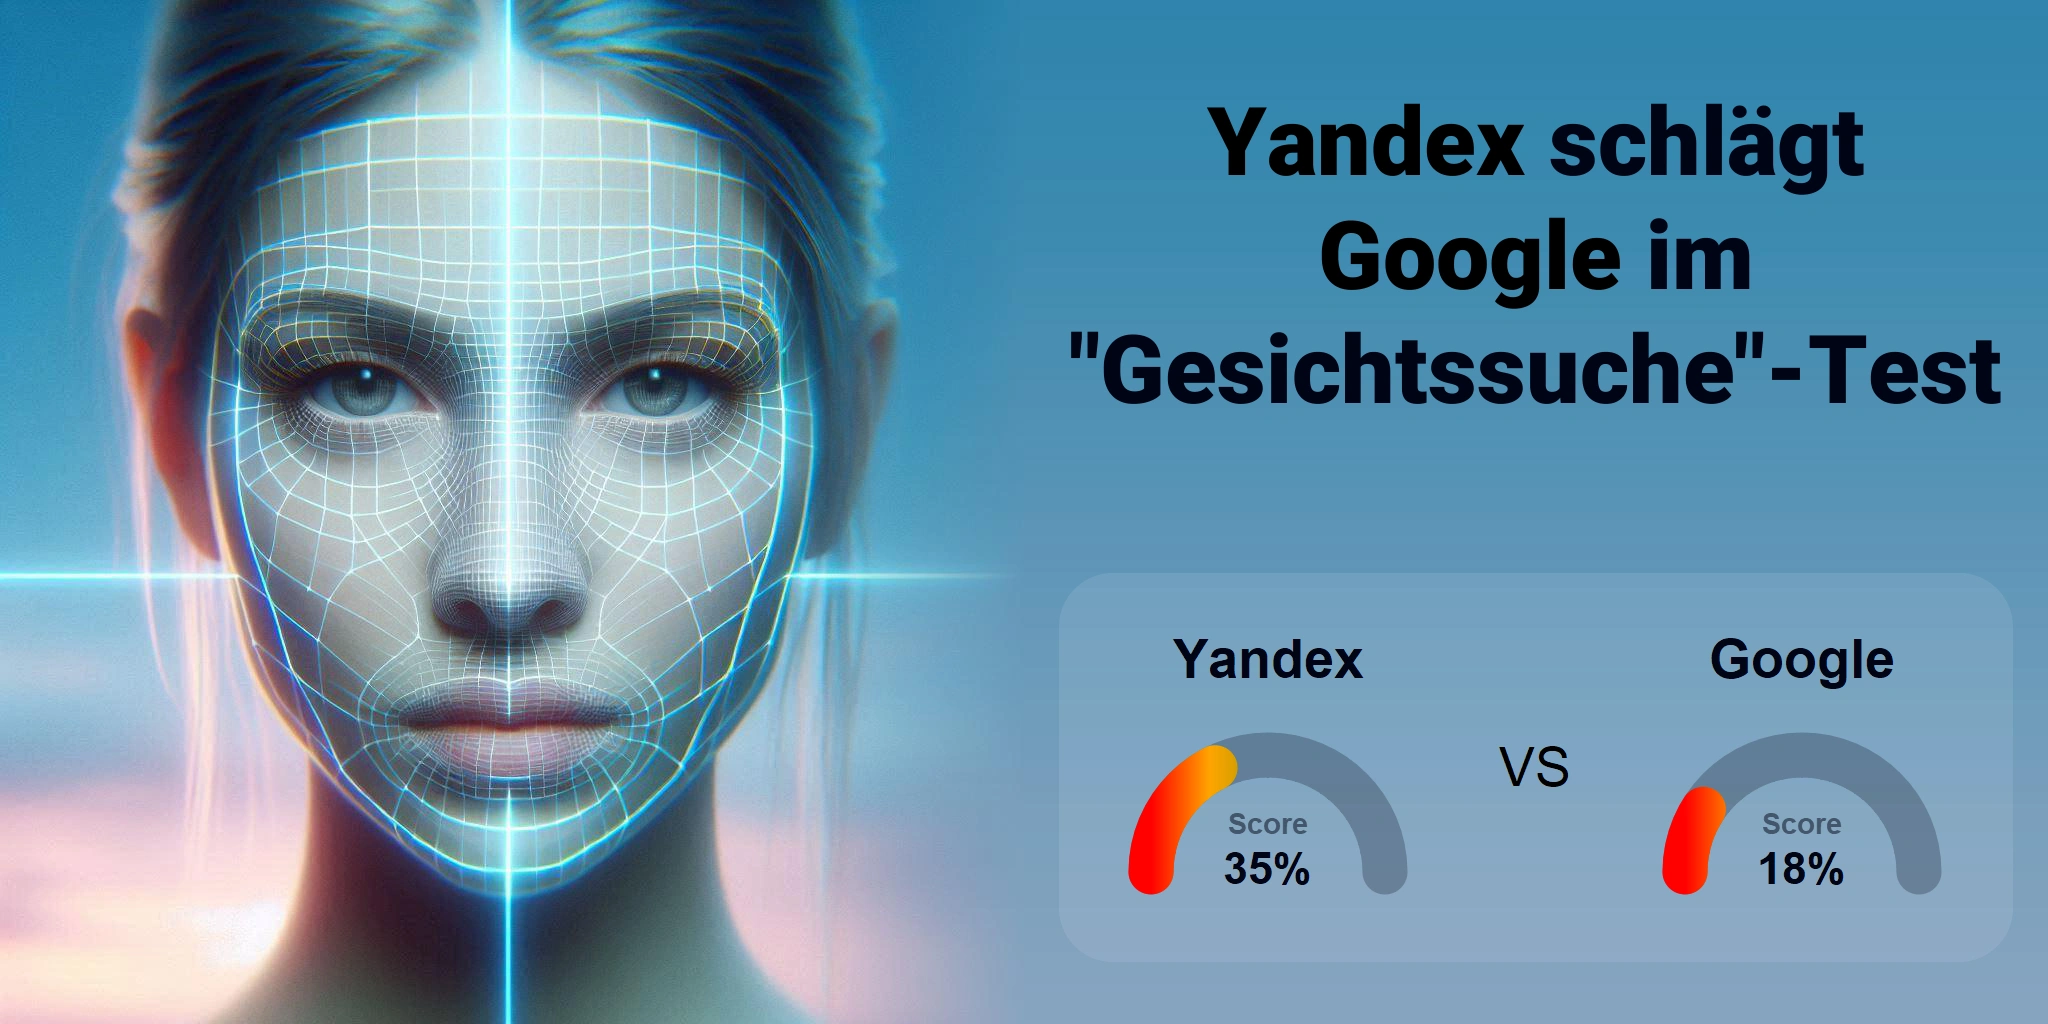 Welcher ist besser für die Gesichtssuche: <br>Google oder Yandex?